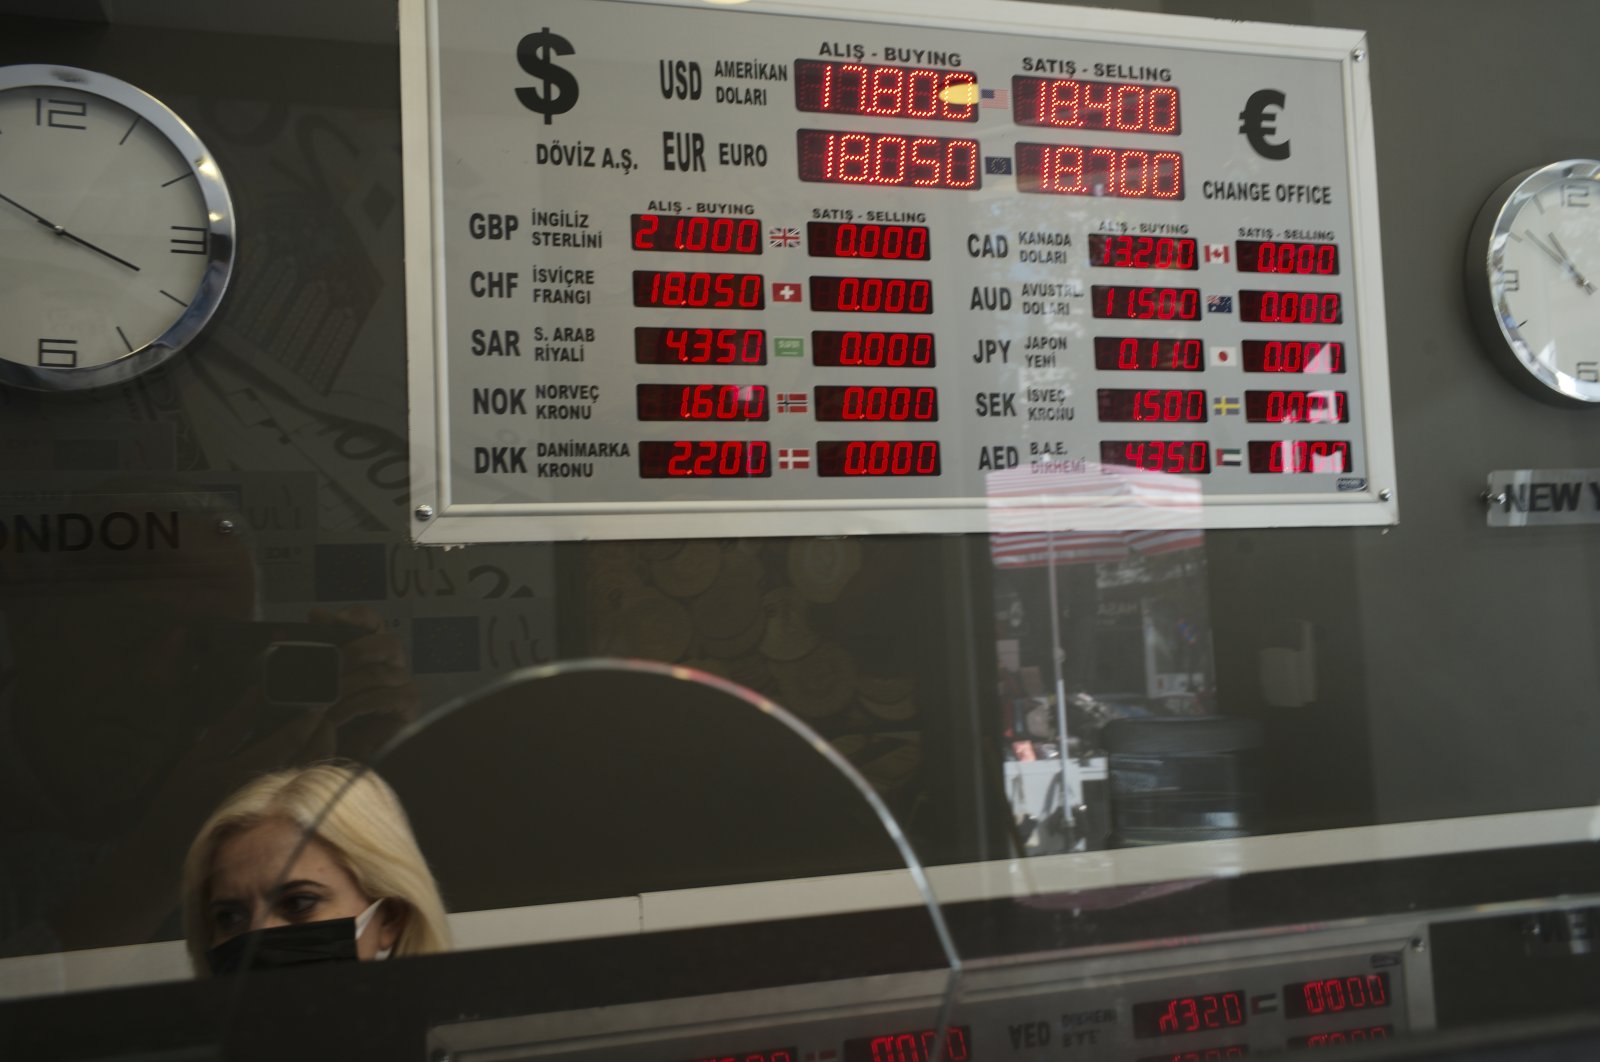 Bank sentral Turki menggunakan strategi ‘tekad’ untuk meningkatkan selera lira